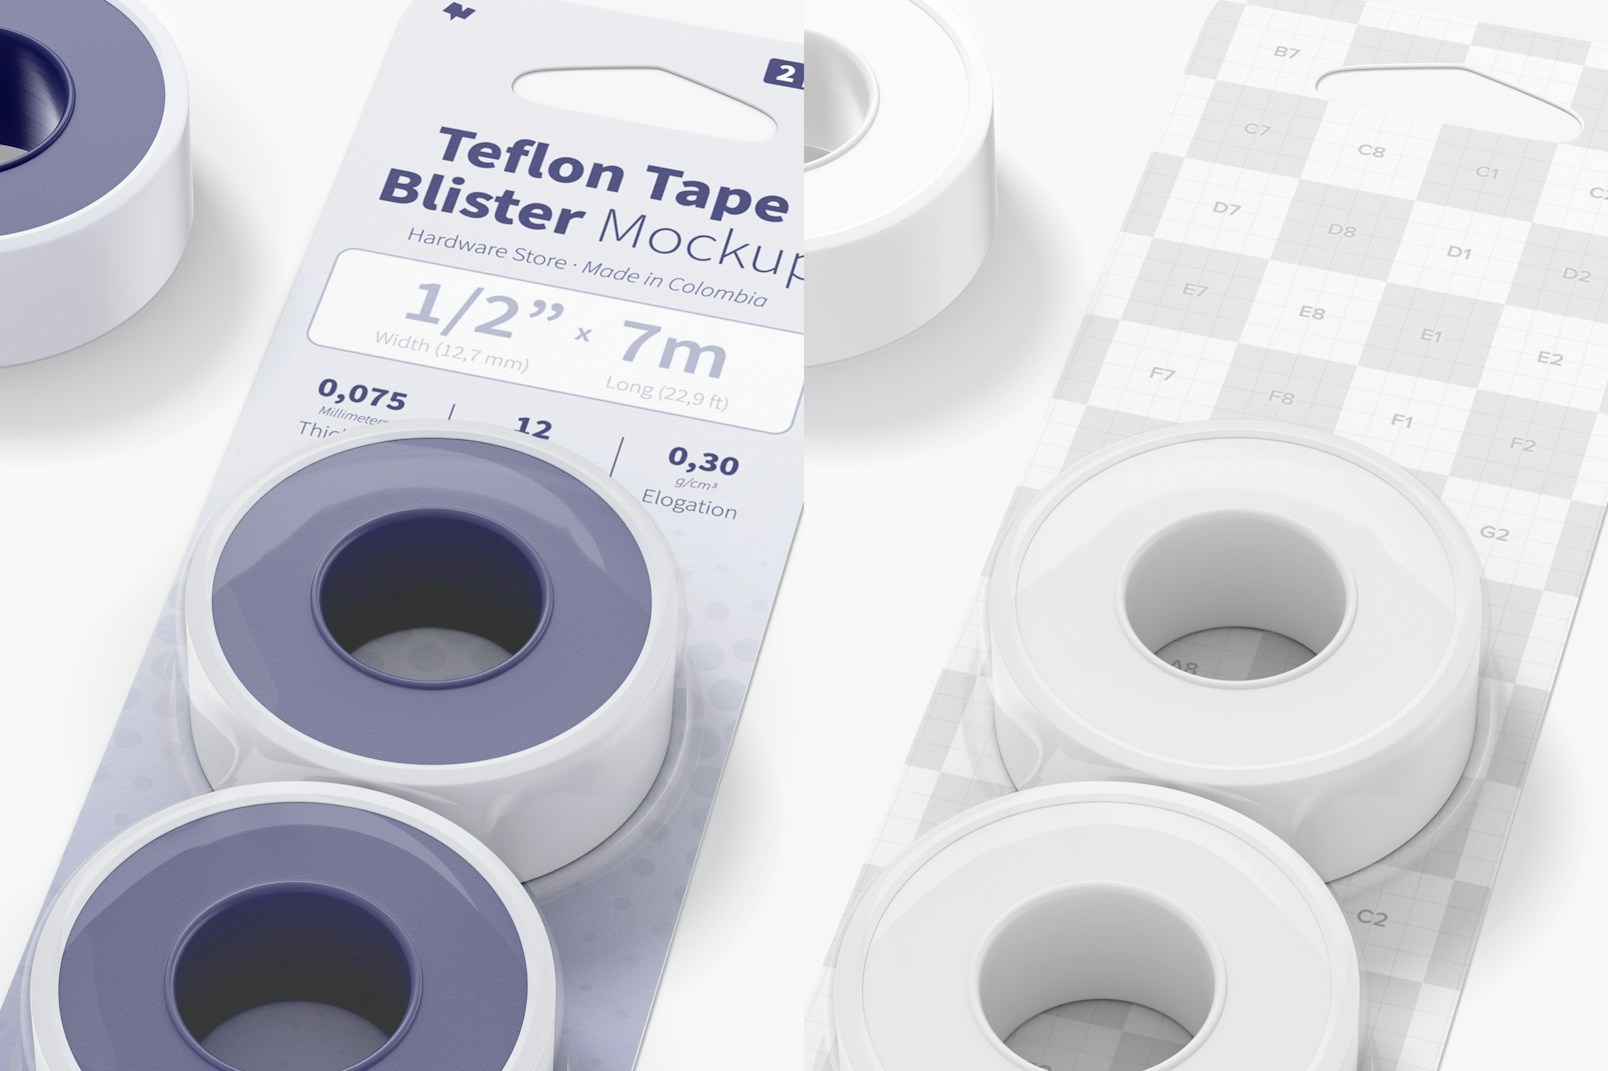 Teflon Tape Blister Mockup, Close Up